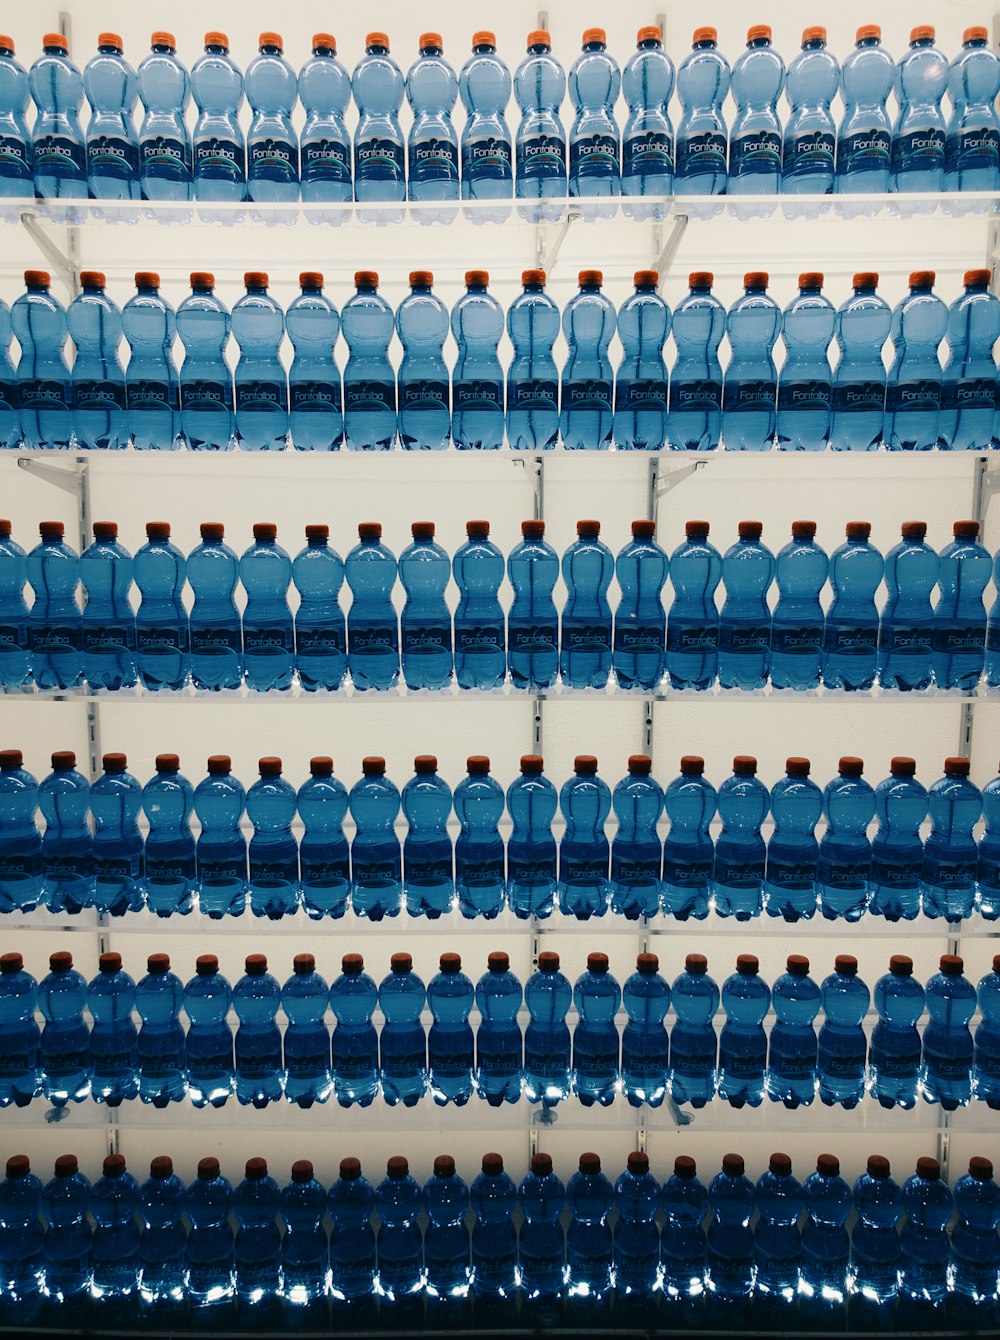 acque in bottiglia assortite sullo scaffale